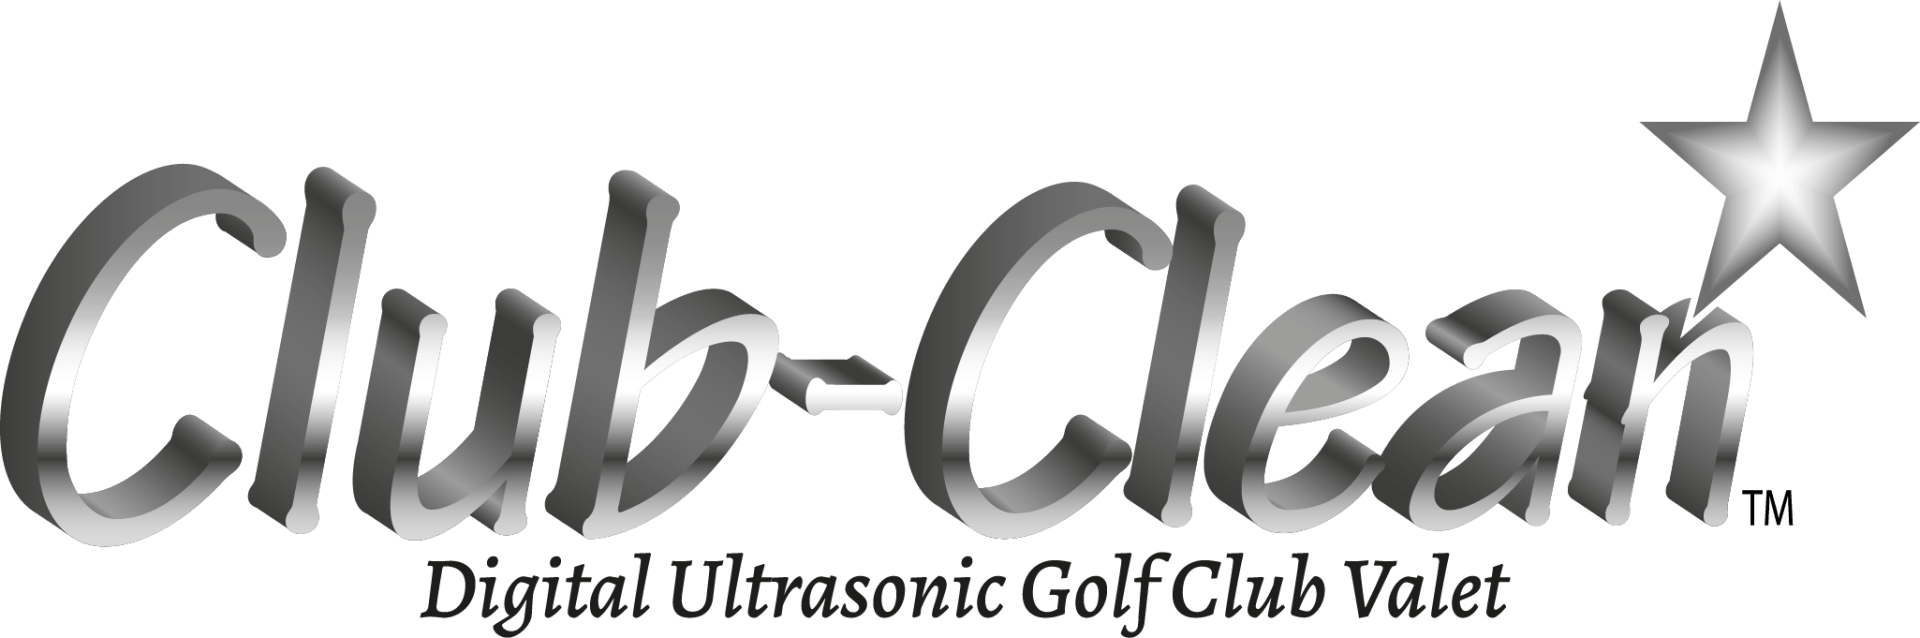 club clean logo